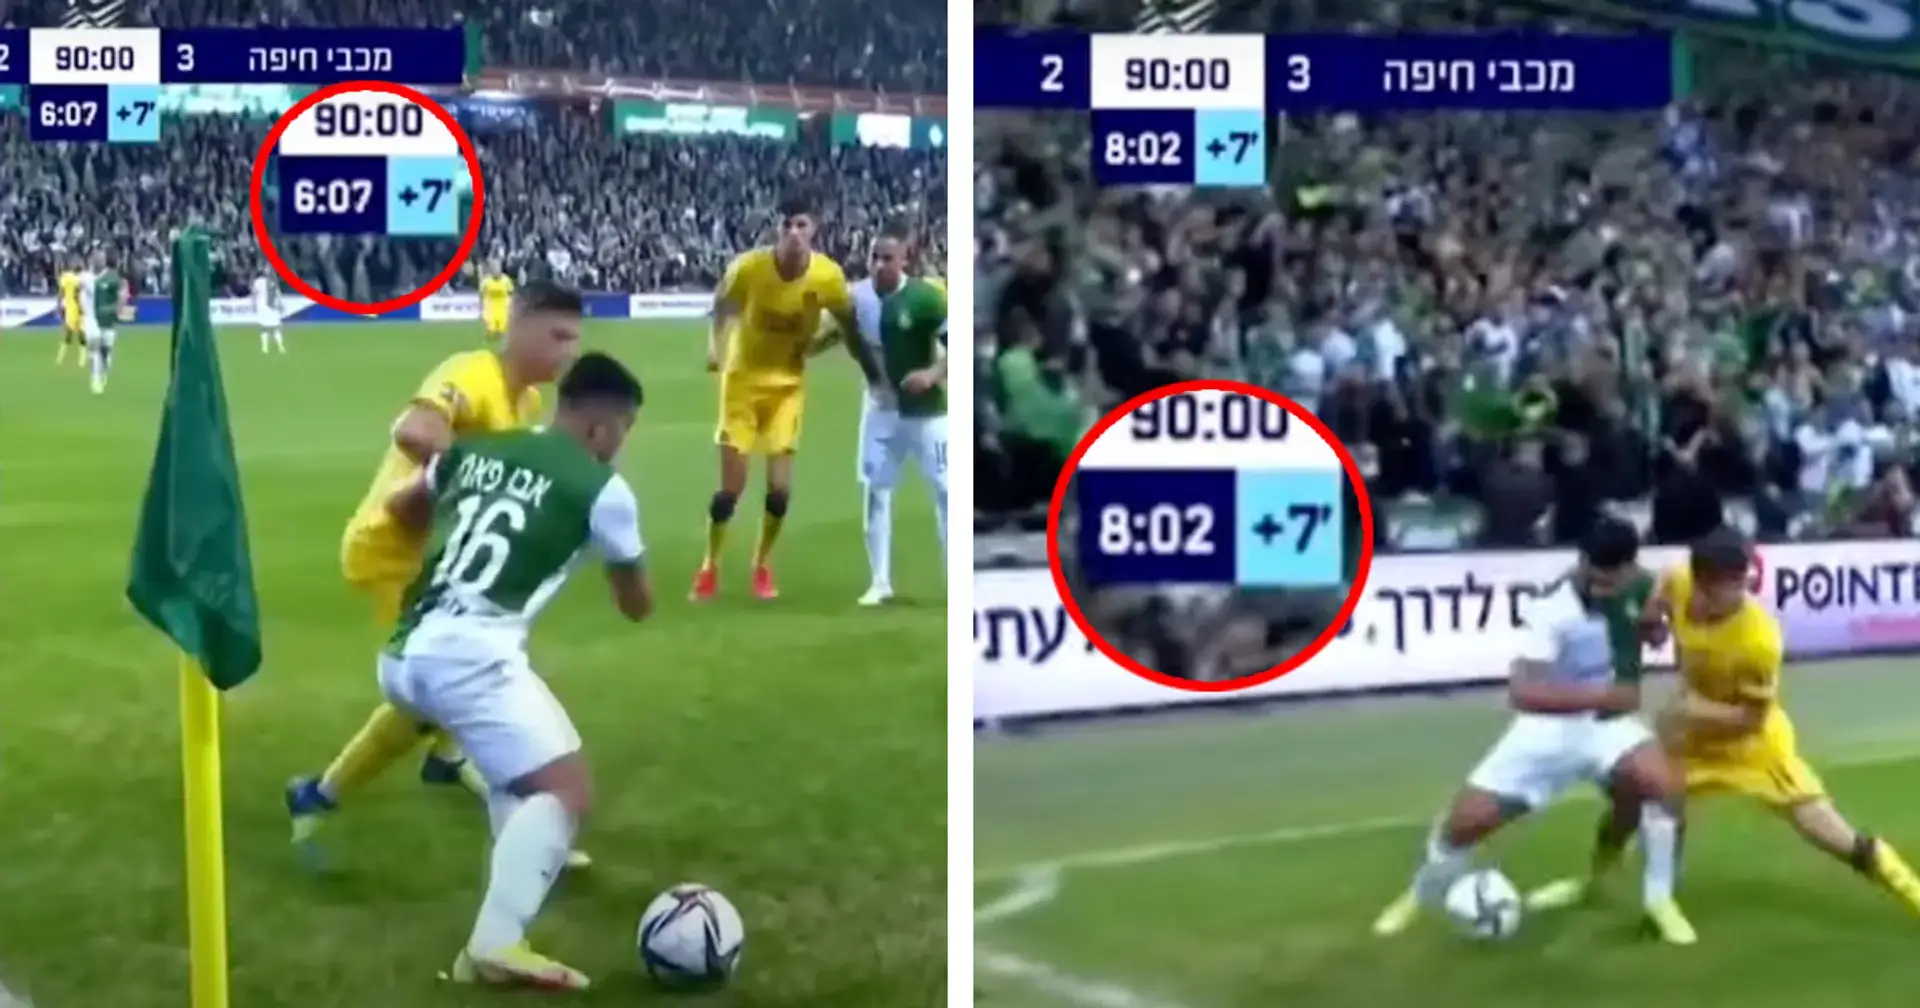 Un jugador del Maccabi Haifa mantiene el balón dos minutos seguidos perdiendo tiempo en el córner